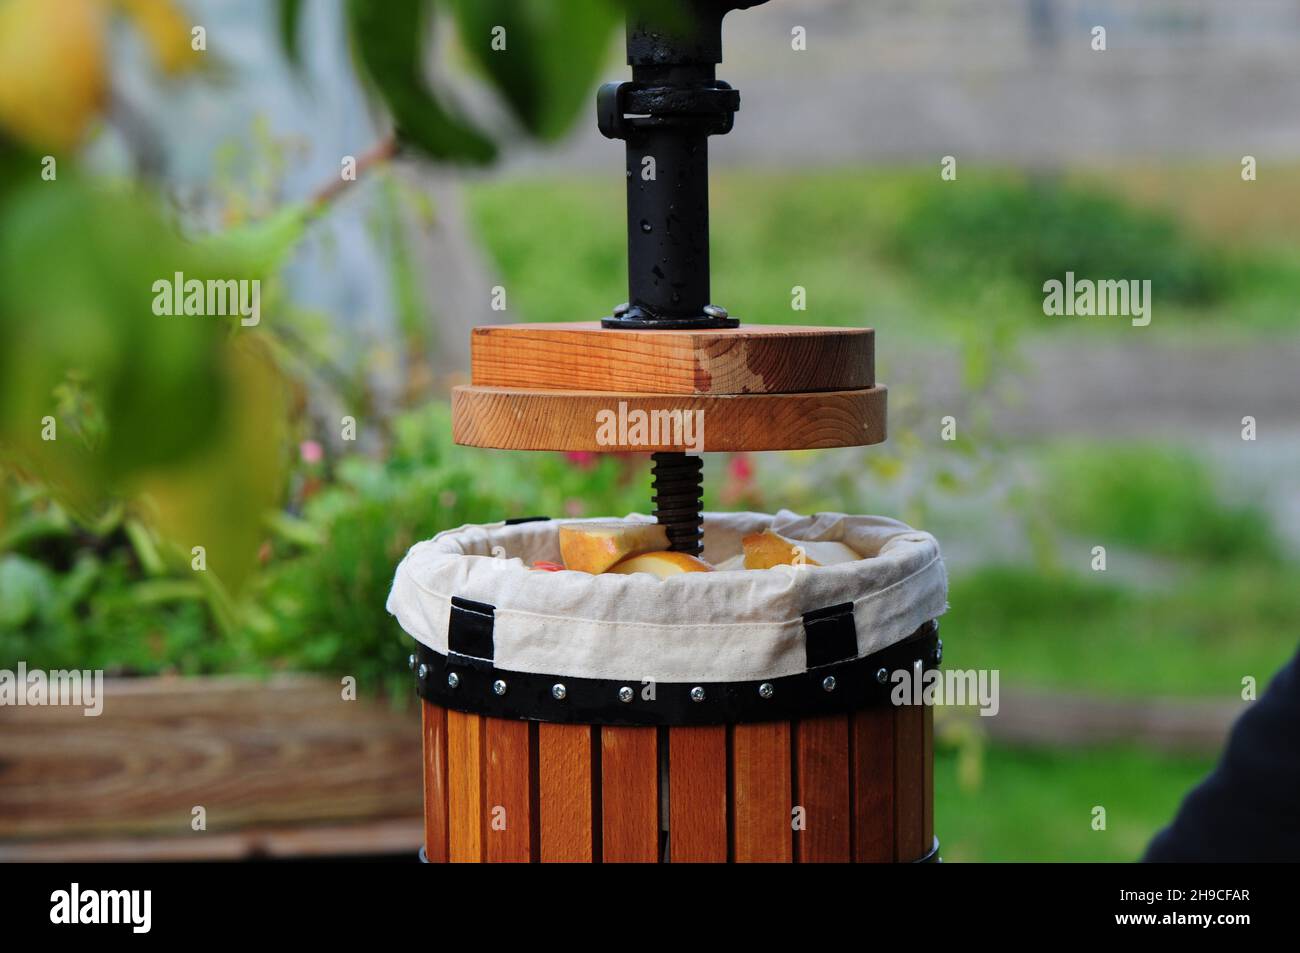 Préparez la production traditionnelle de jus de cidre avec une centrifugeuse en bois en Allemagne.Presse remplie de pommes Elster de culture biologique (Malus domestica) Banque D'Images